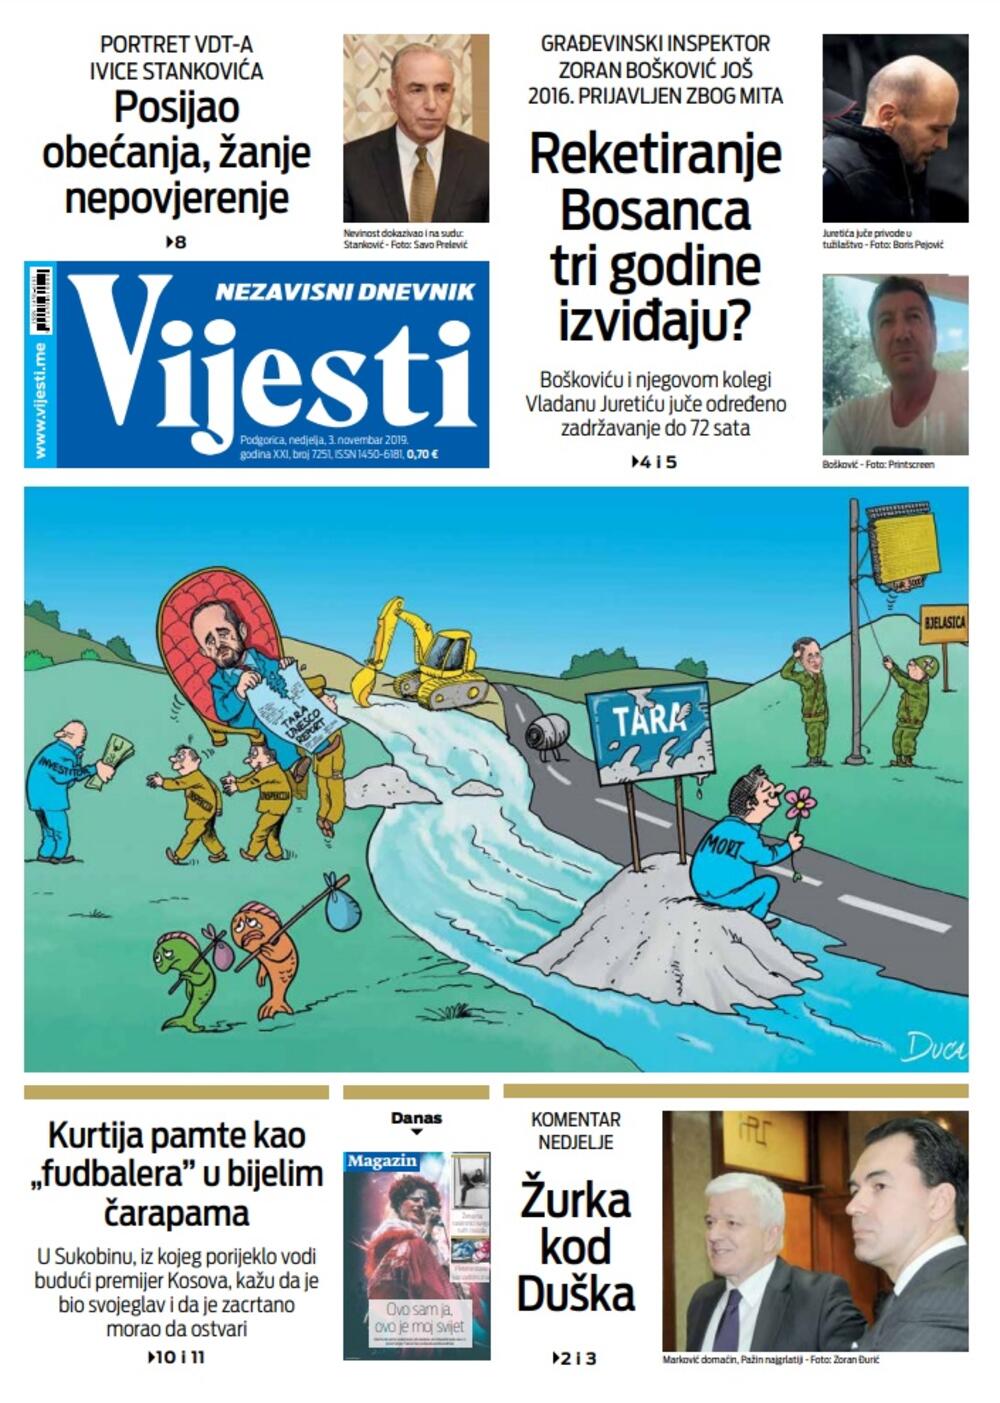 Naslovna strana "Vijesti" za 3. novembar 2019., Foto: Vijesti